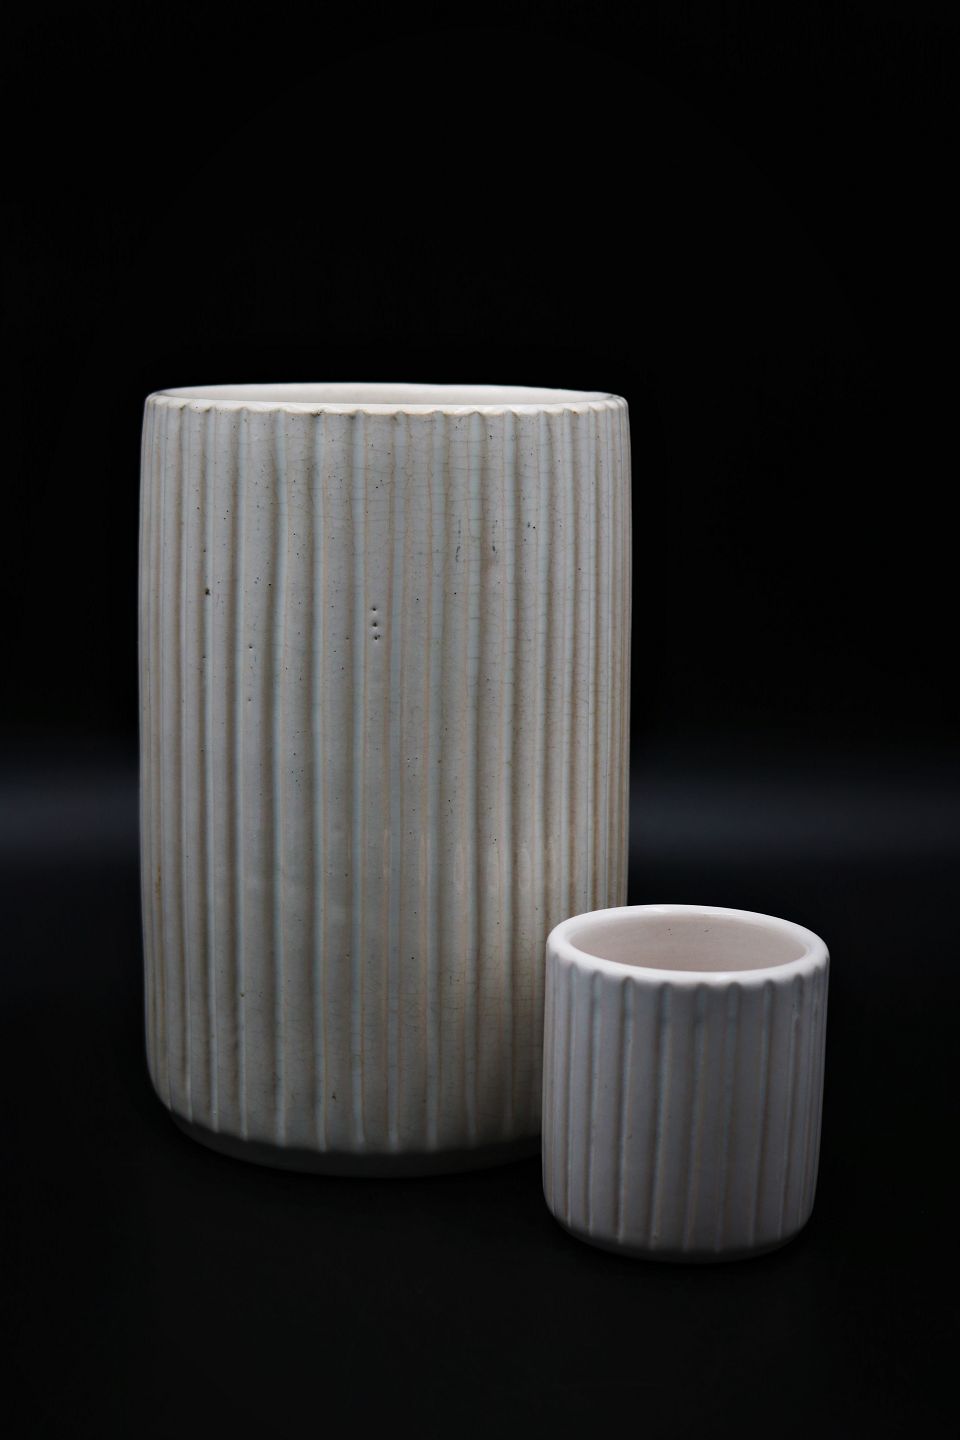 K&Co Glaseret , rillet keramik vaser fra - Danmark. ...